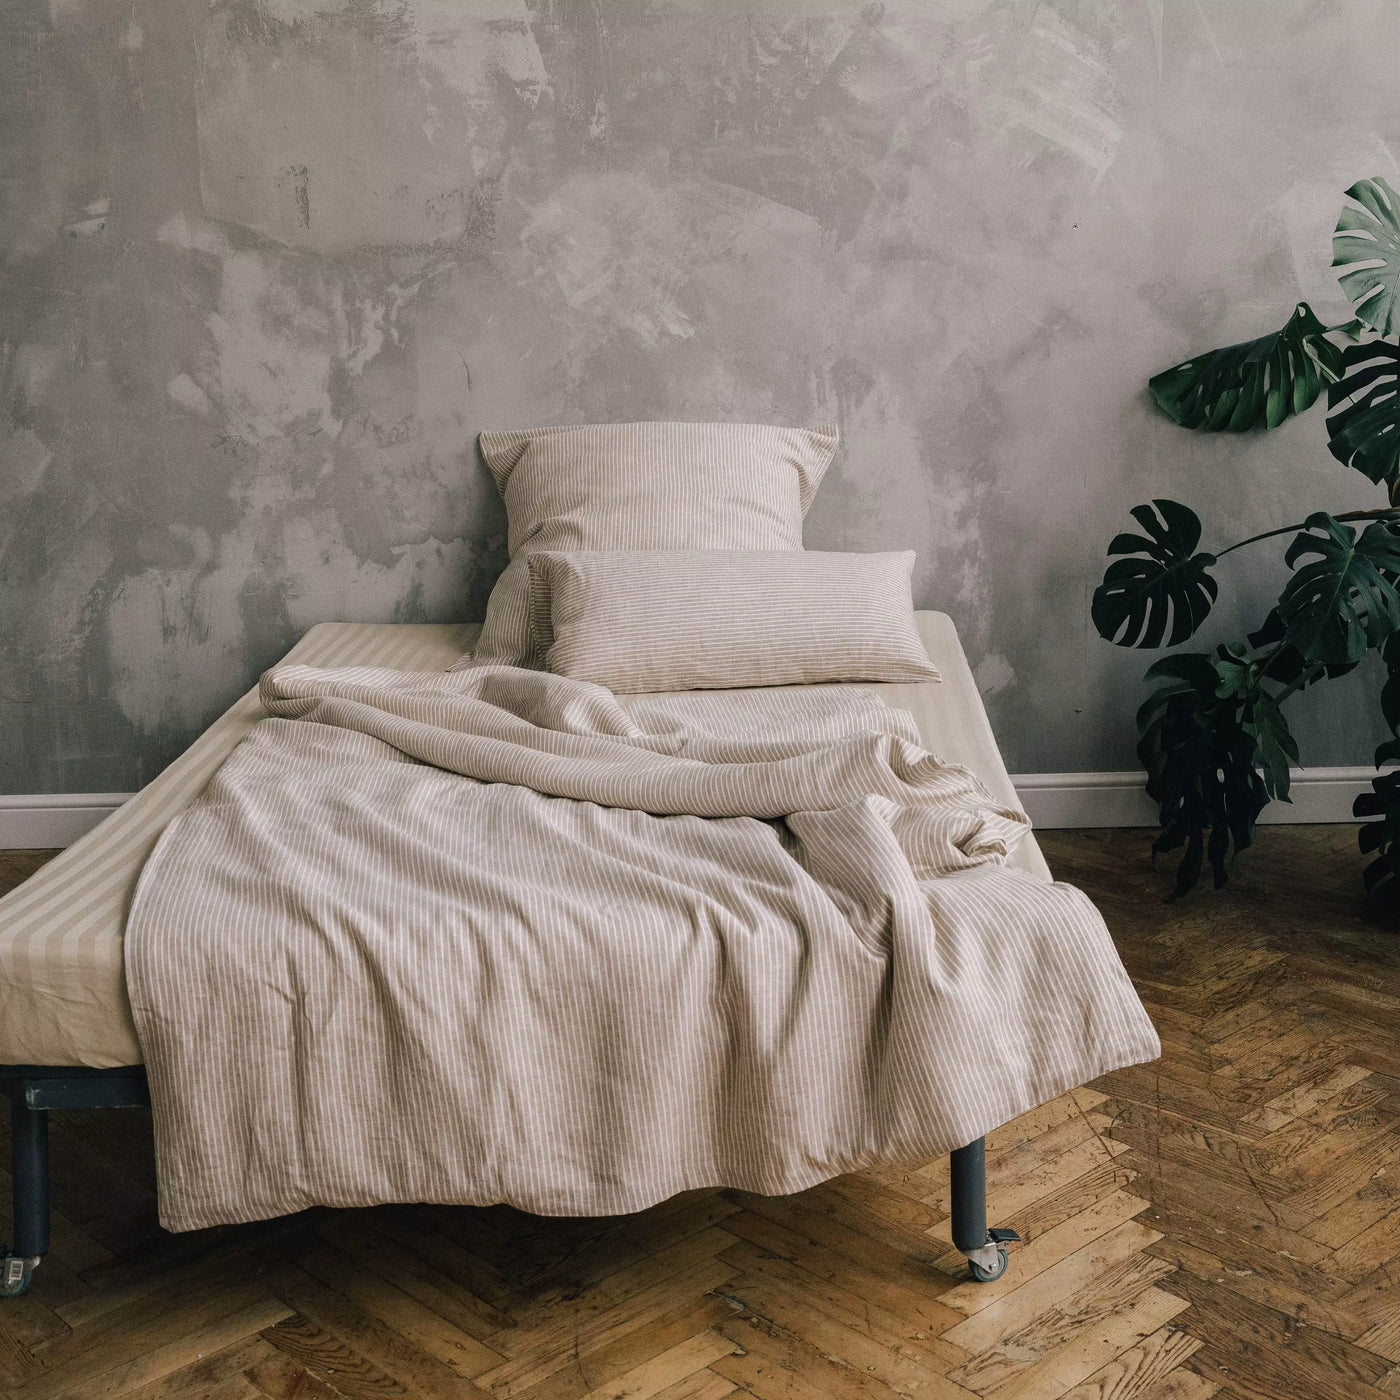 Acquista il set di biancheria da letto in puro lino 135x200 in bianco con righe marroni